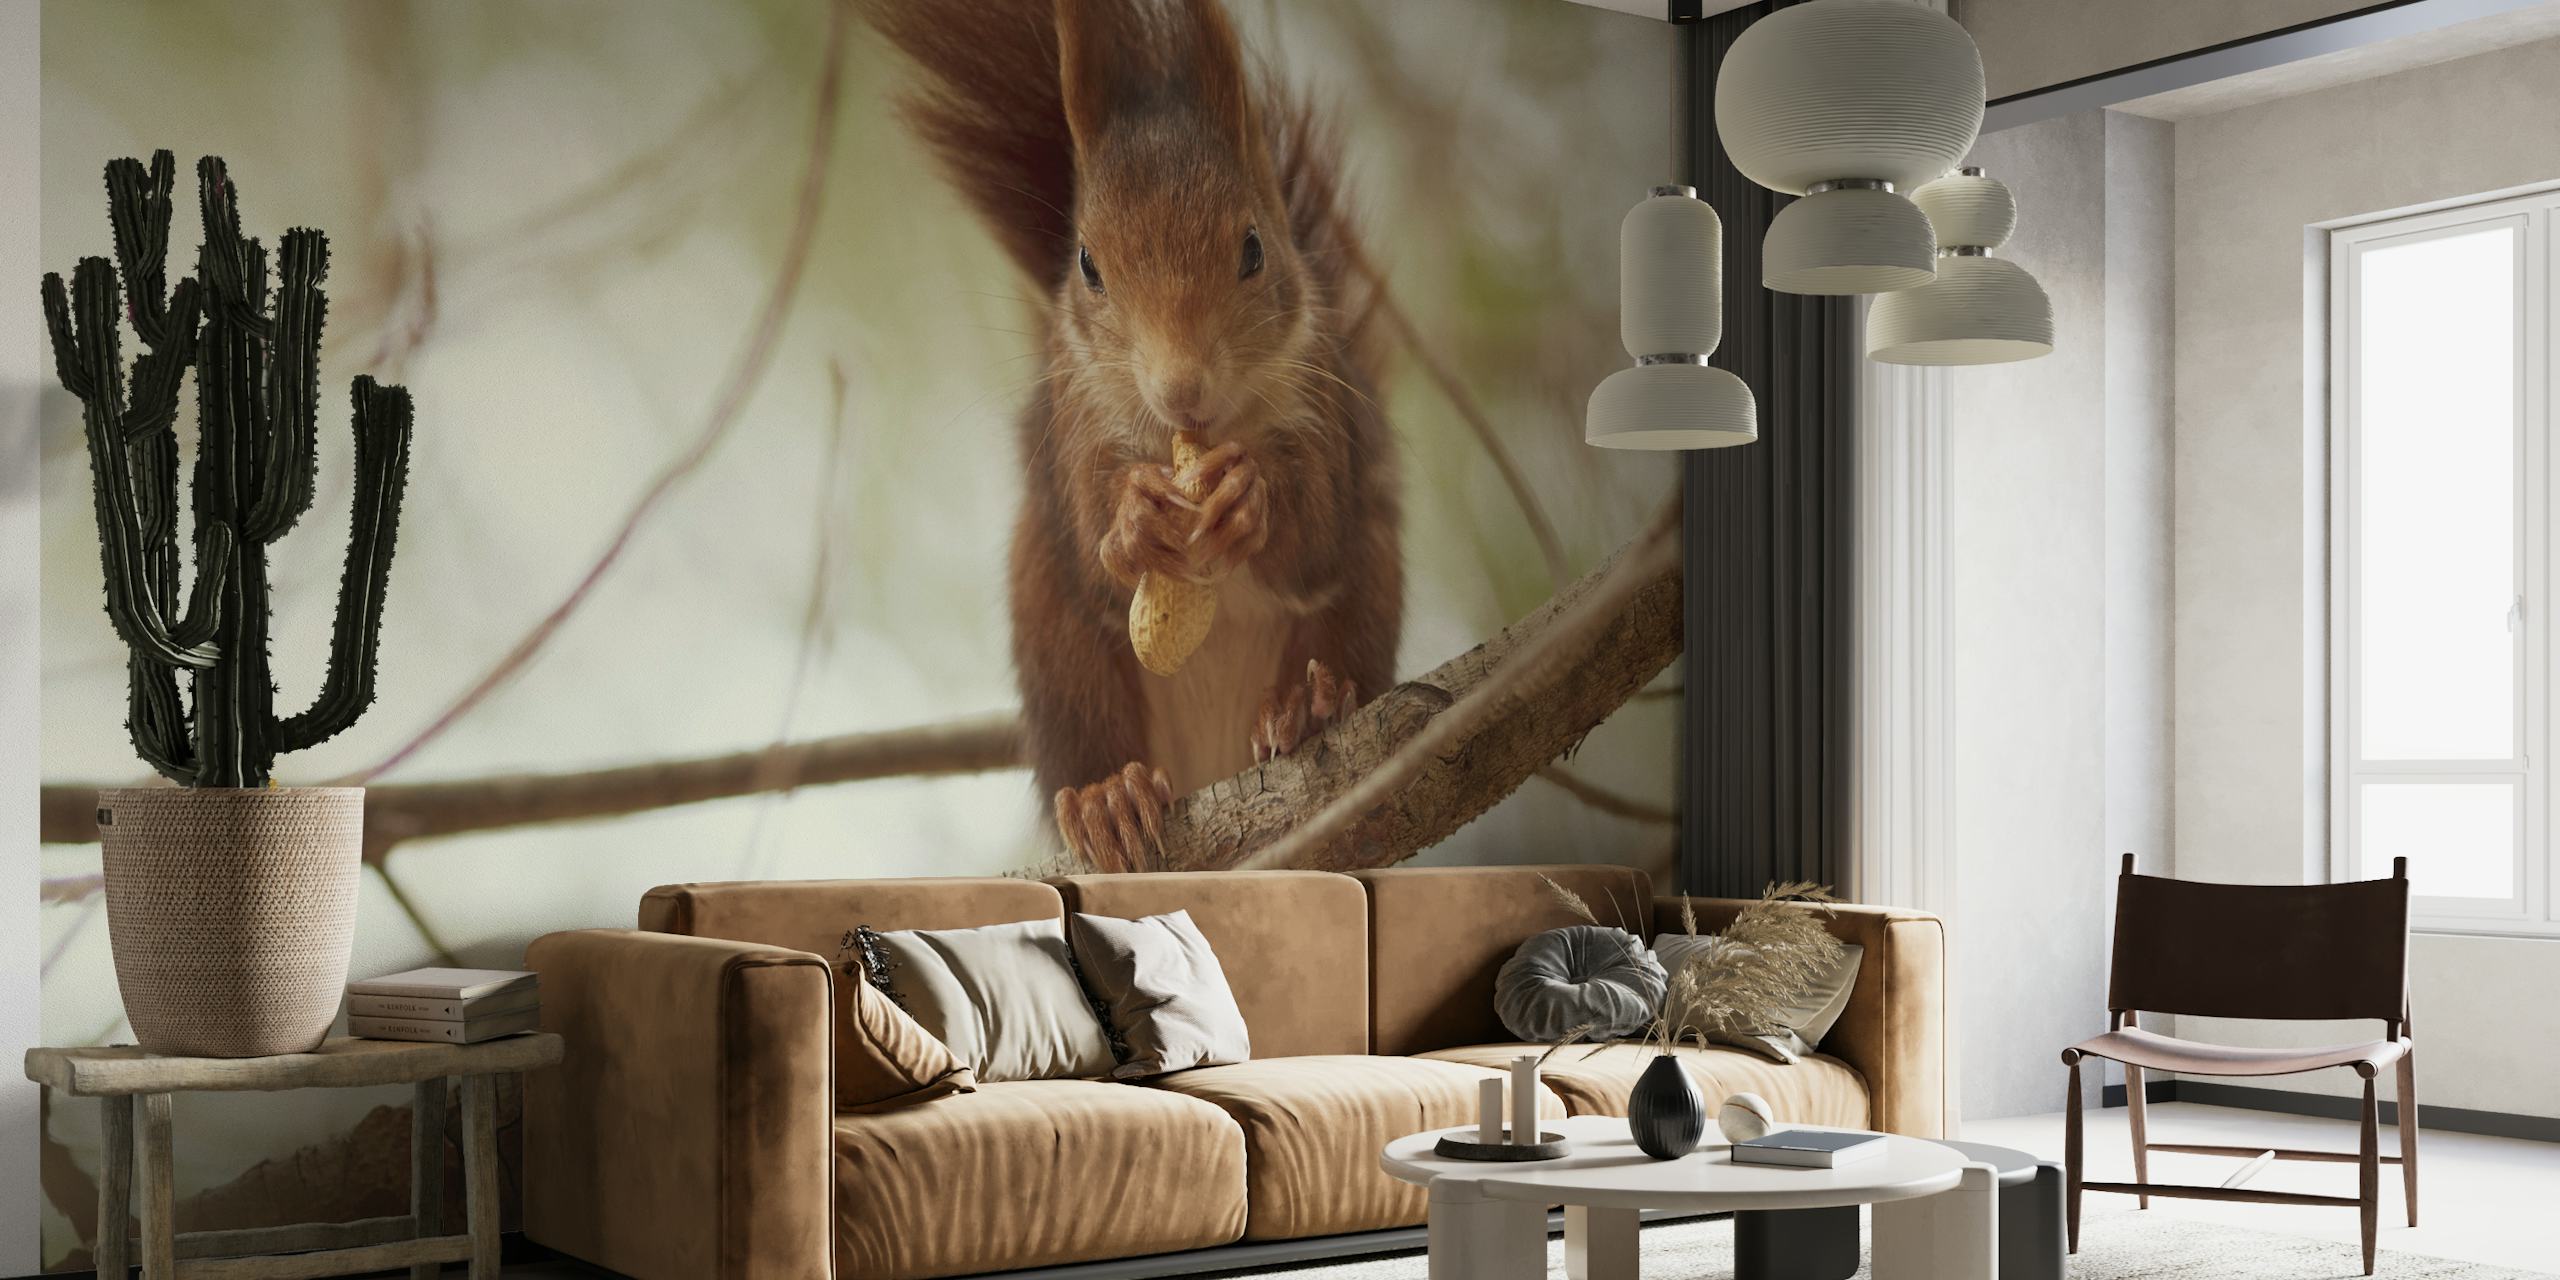 Spanish squirrel behang